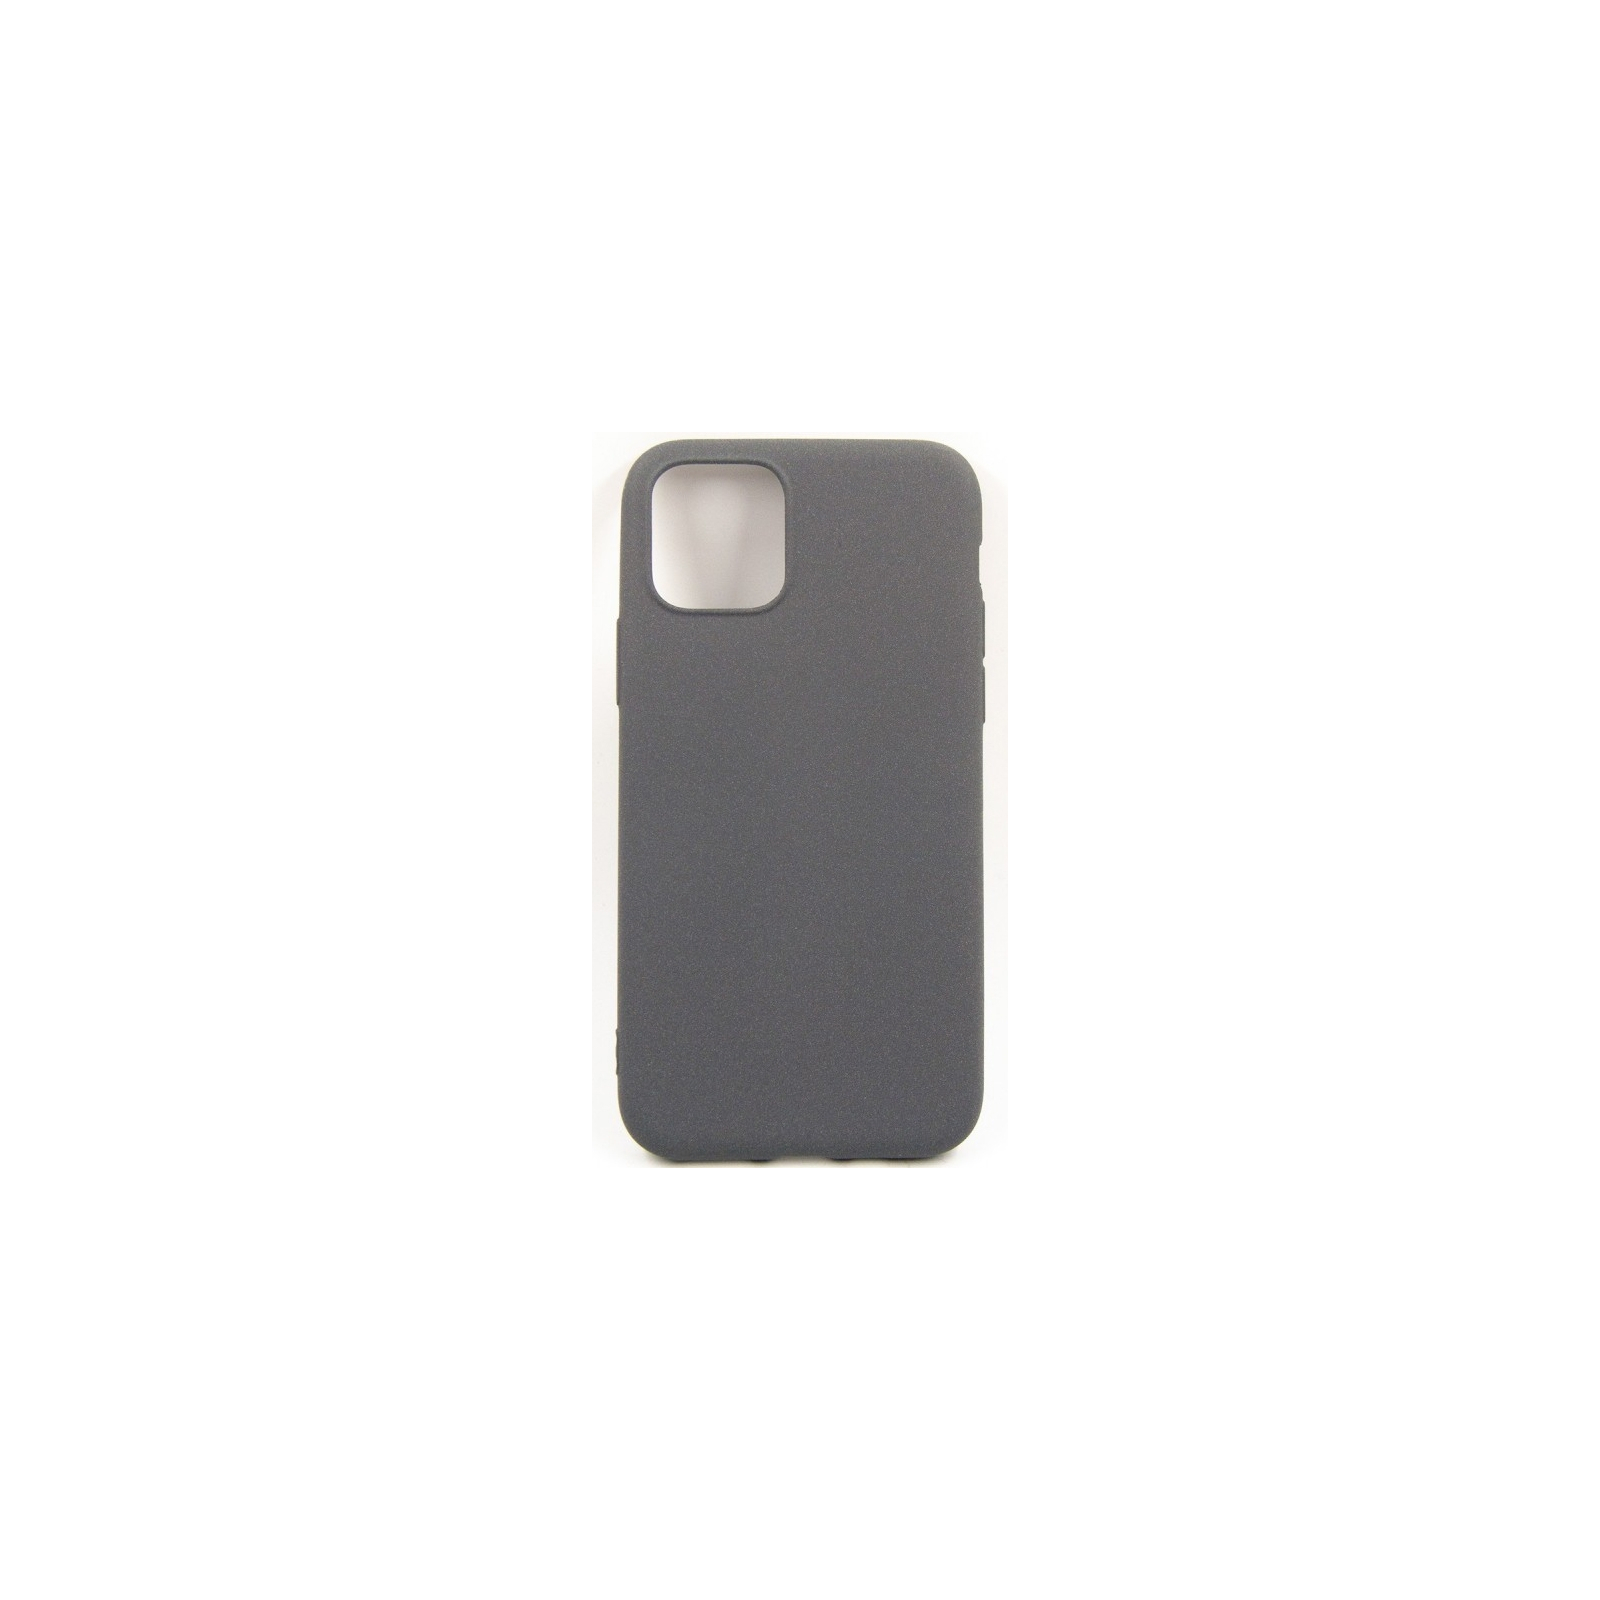 Чехол для мобильного телефона Dengos Carbon iPhone 11, grey (DG-TPU-CRBN-36) (DG-TPU-CRBN-36)